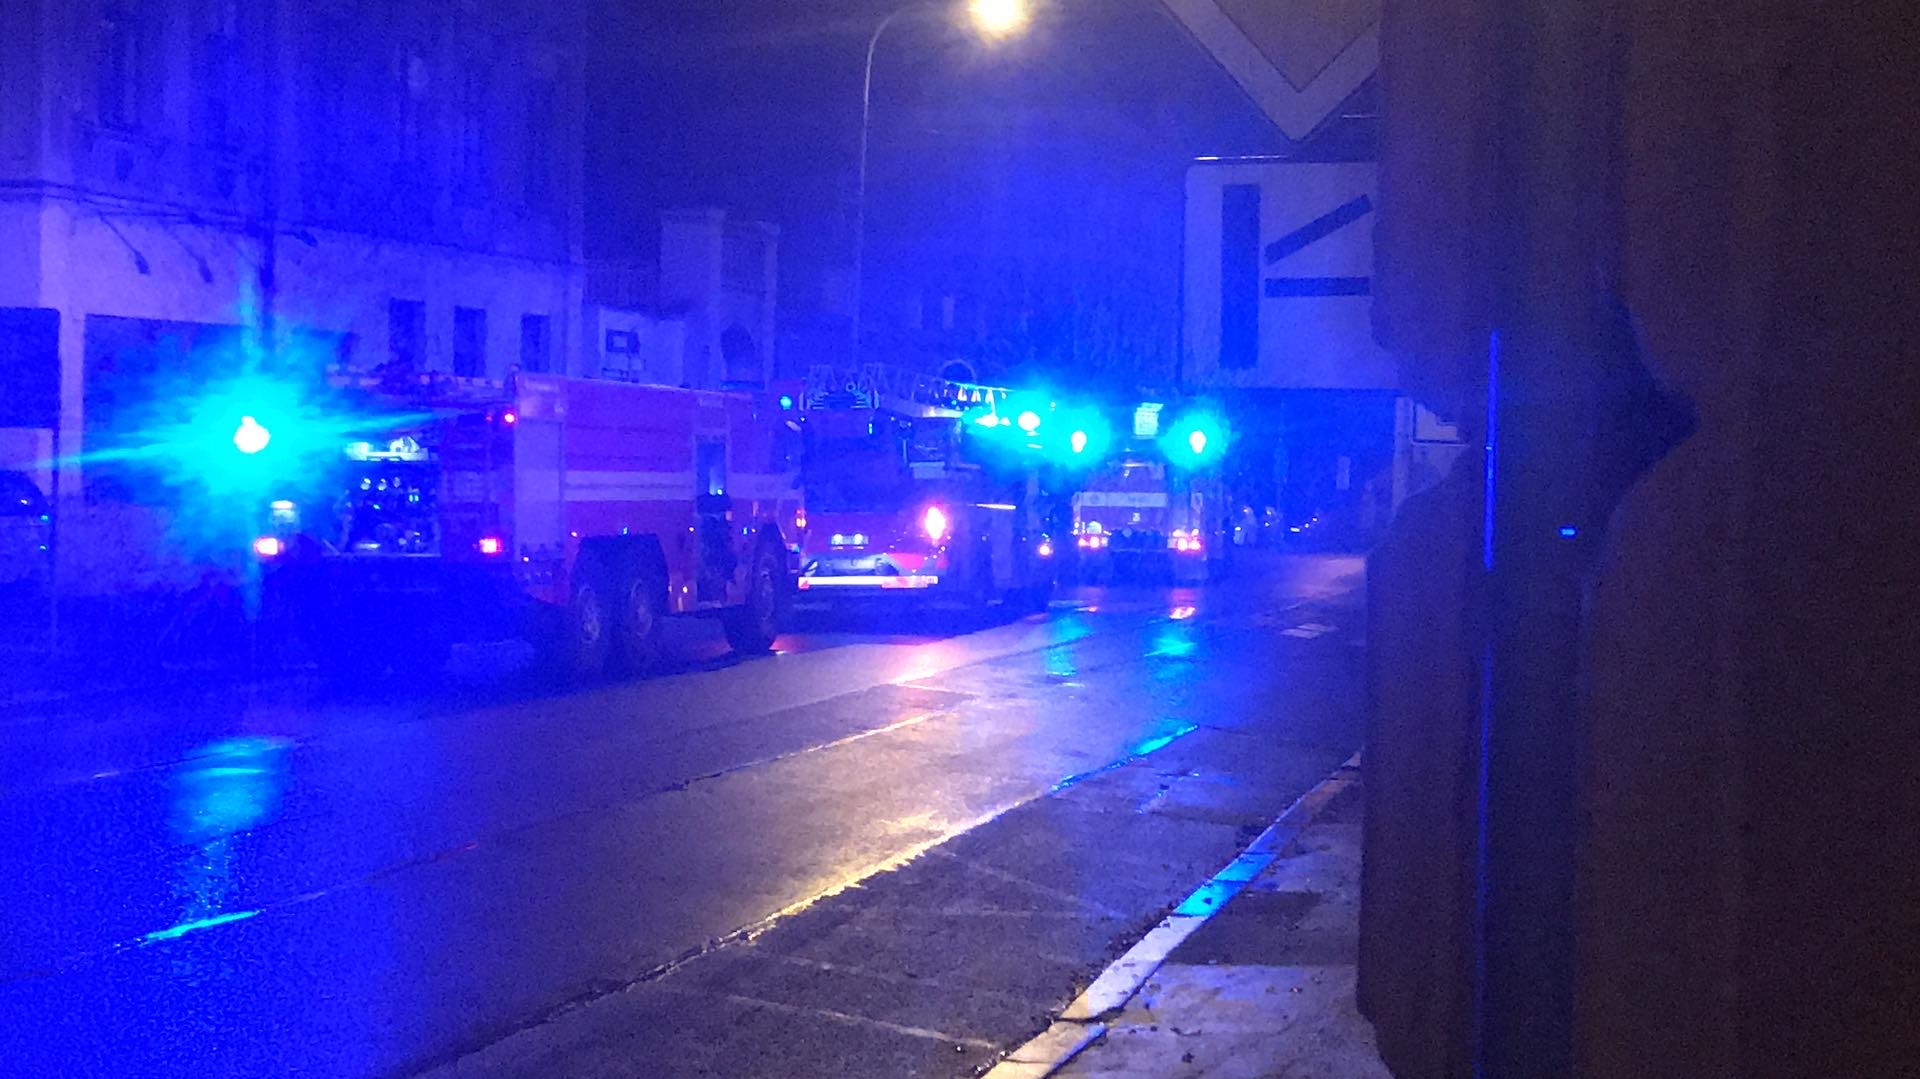 Foto: V úterý večer hořelo v domě v Teplické ulici. Požár zlikvidovali profesionální hasiči